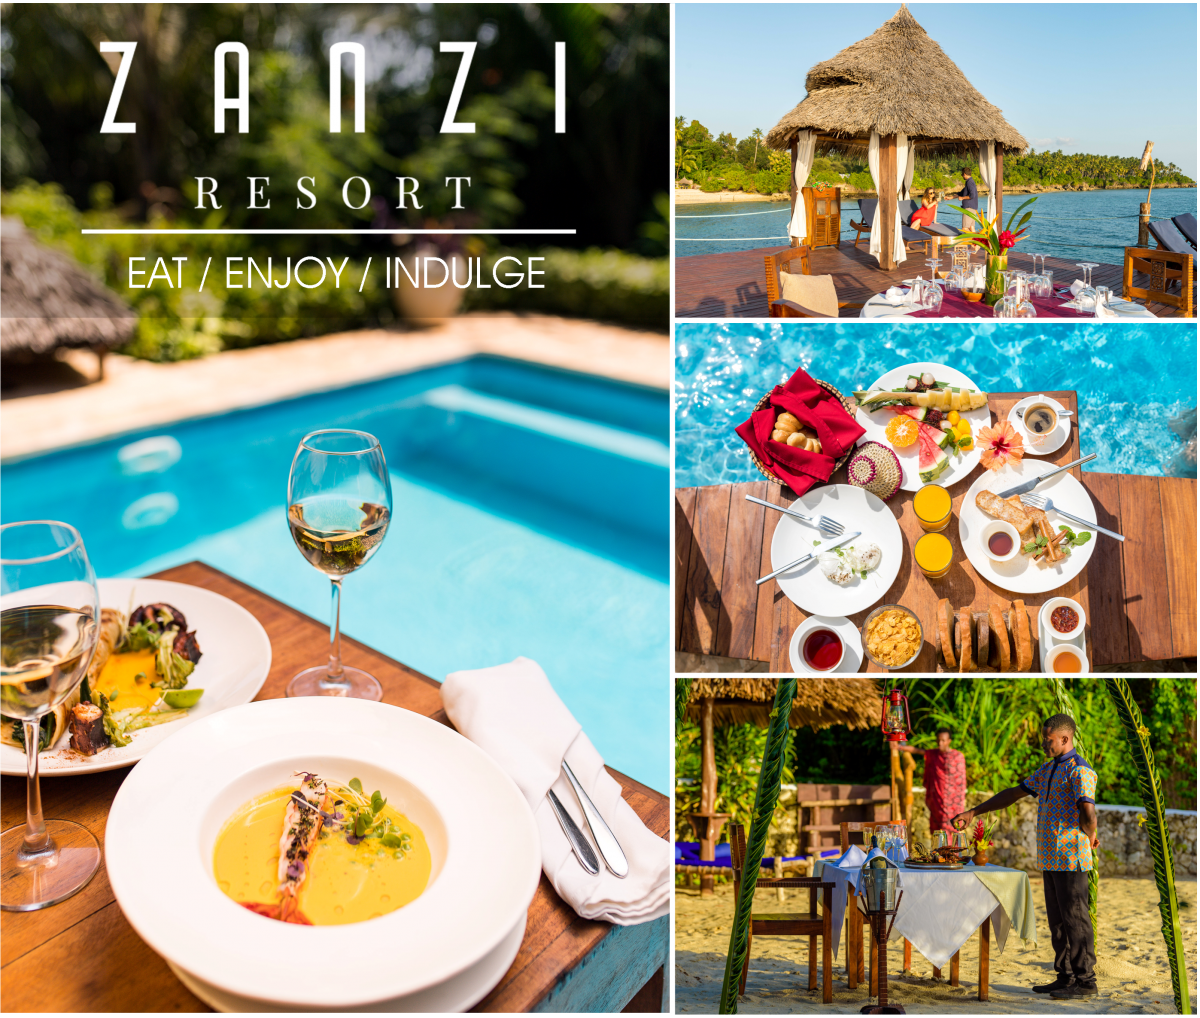 Zanzi Resort Marketing